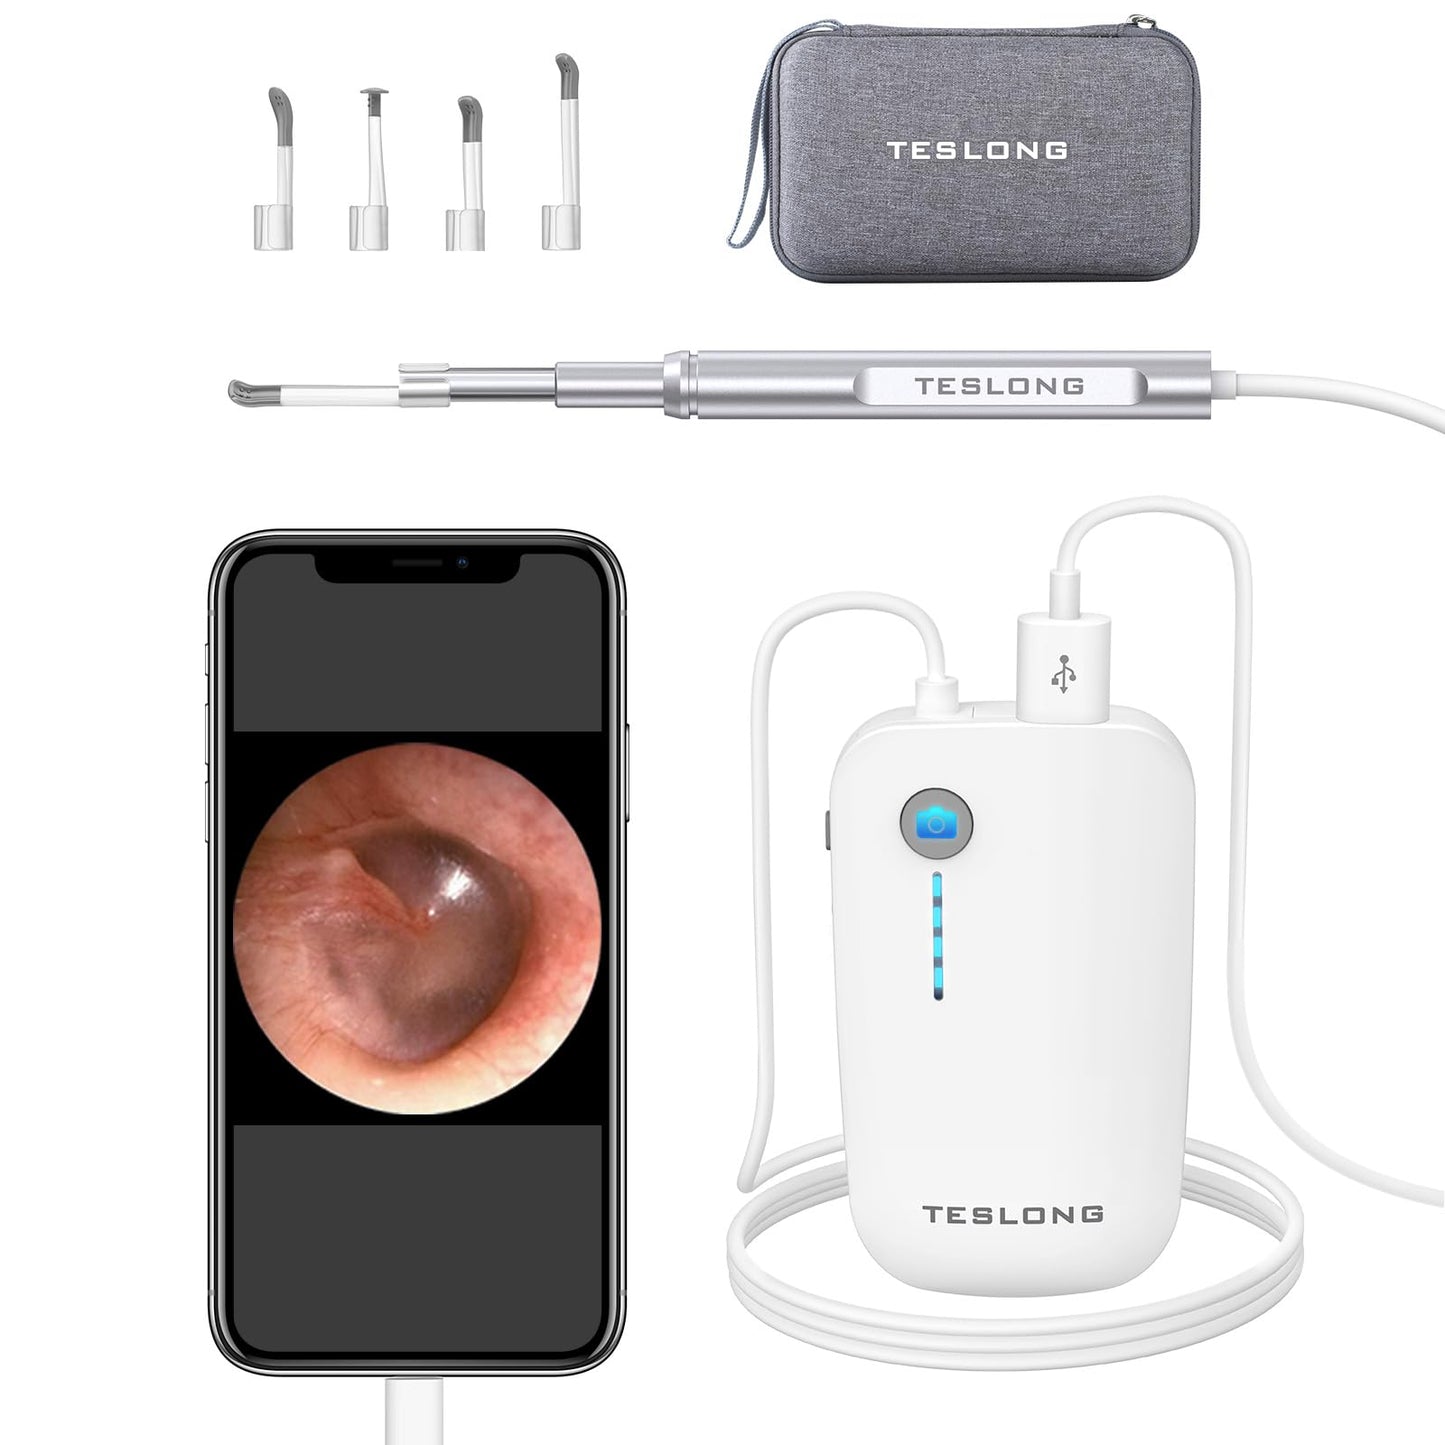 Teslong Teslong - Otoscopio digital con removedor de cera de oído, cámara de oído con herramientas de eliminación de cera de oído, otoscopio de video con luz para iPhone, iPad, teléfono Android, USB, púas de oído, impermeable, 1080p HD